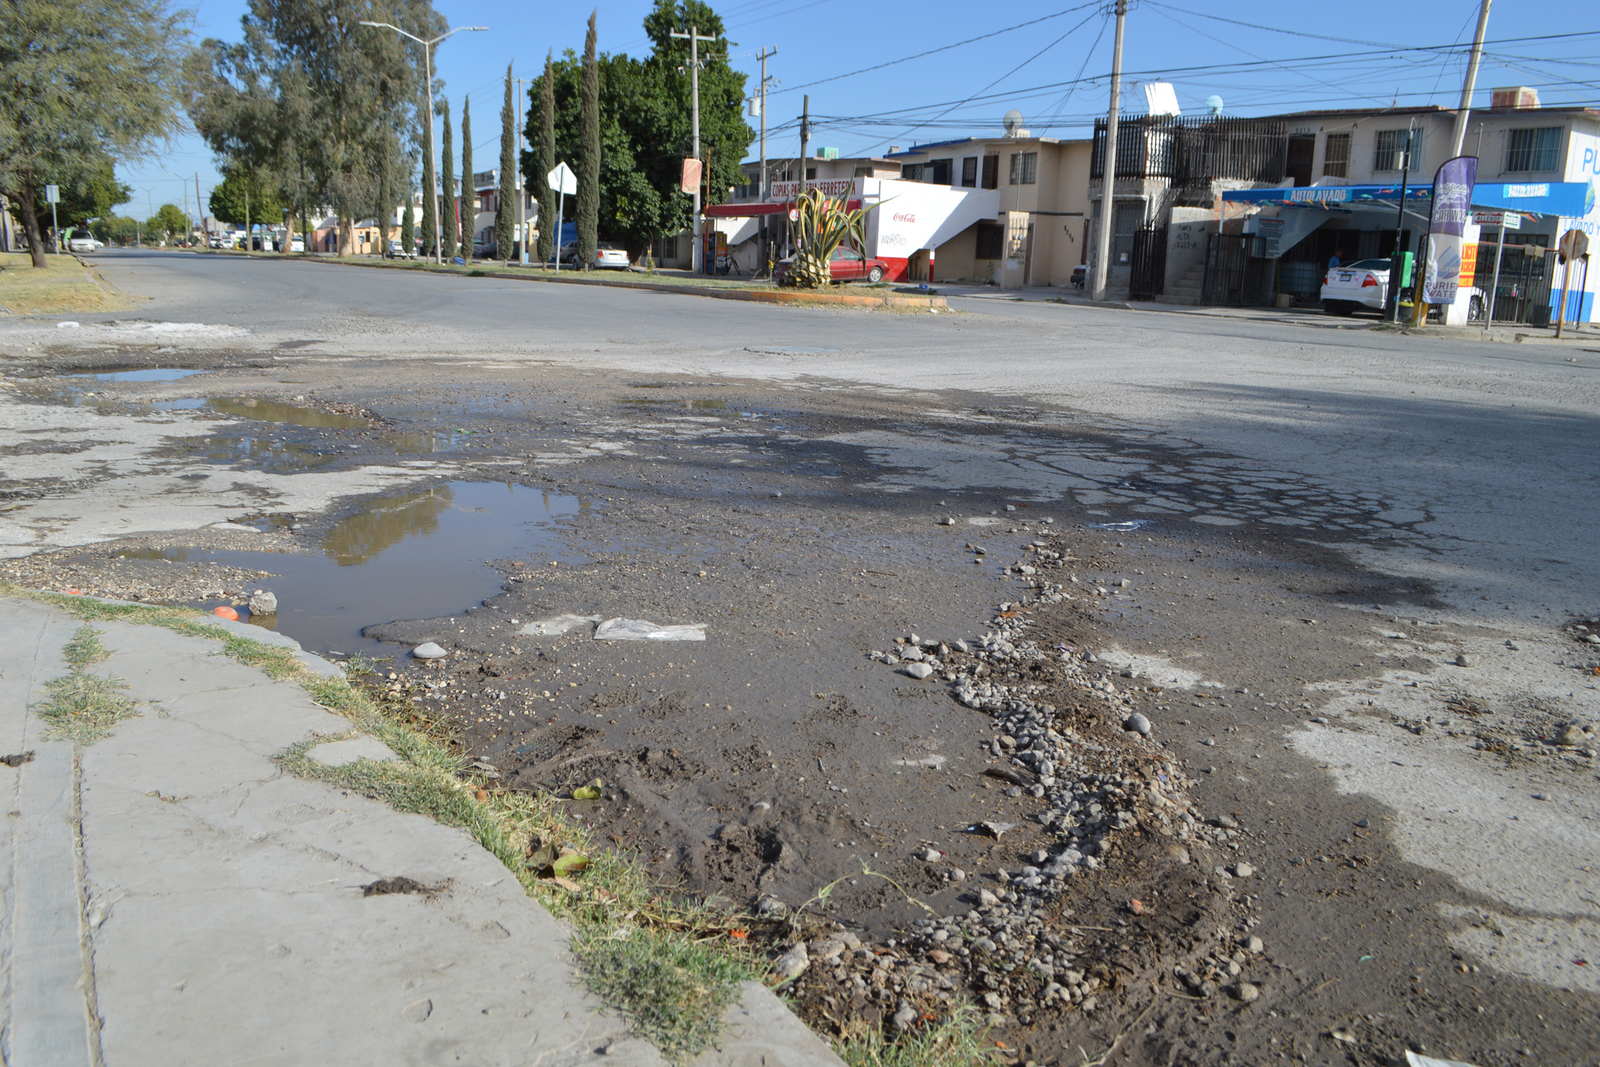 Aguas negras brotan desde hace semanas en la esquina de la avenida Allende y la calle Bahía de las Ballenas, es uno de los puntos de acceso al CAM 29 y a un hogar de niños. (ROBERTO ITURRIAGA)